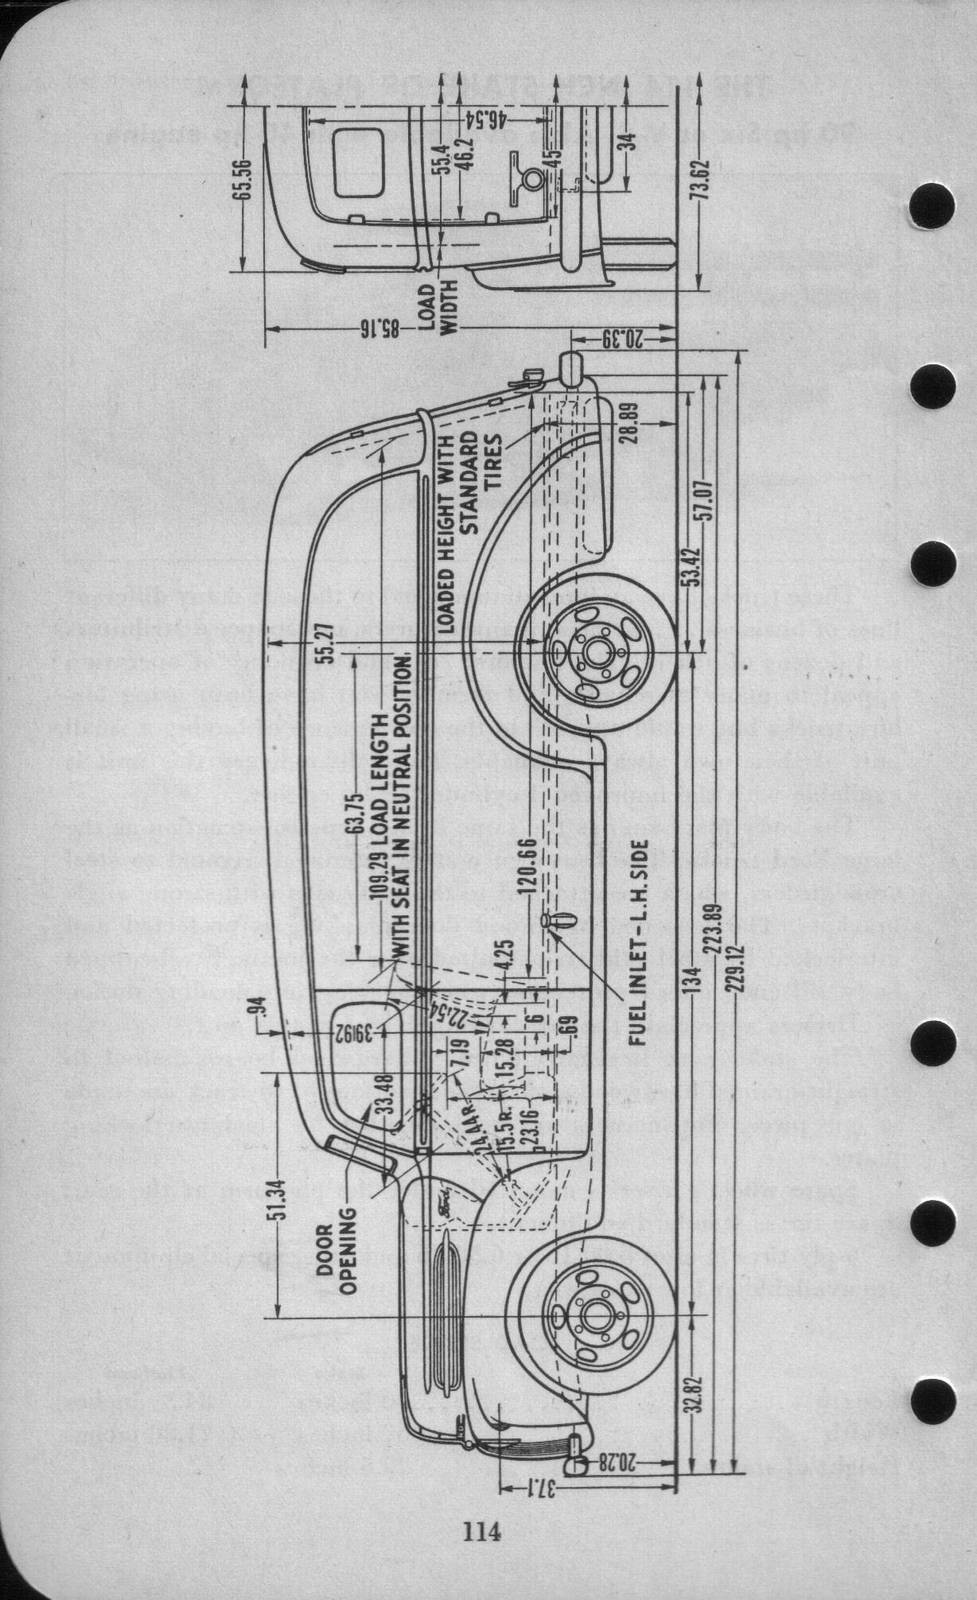 n_1942 Ford Salesmans Reference Manual-114.jpg